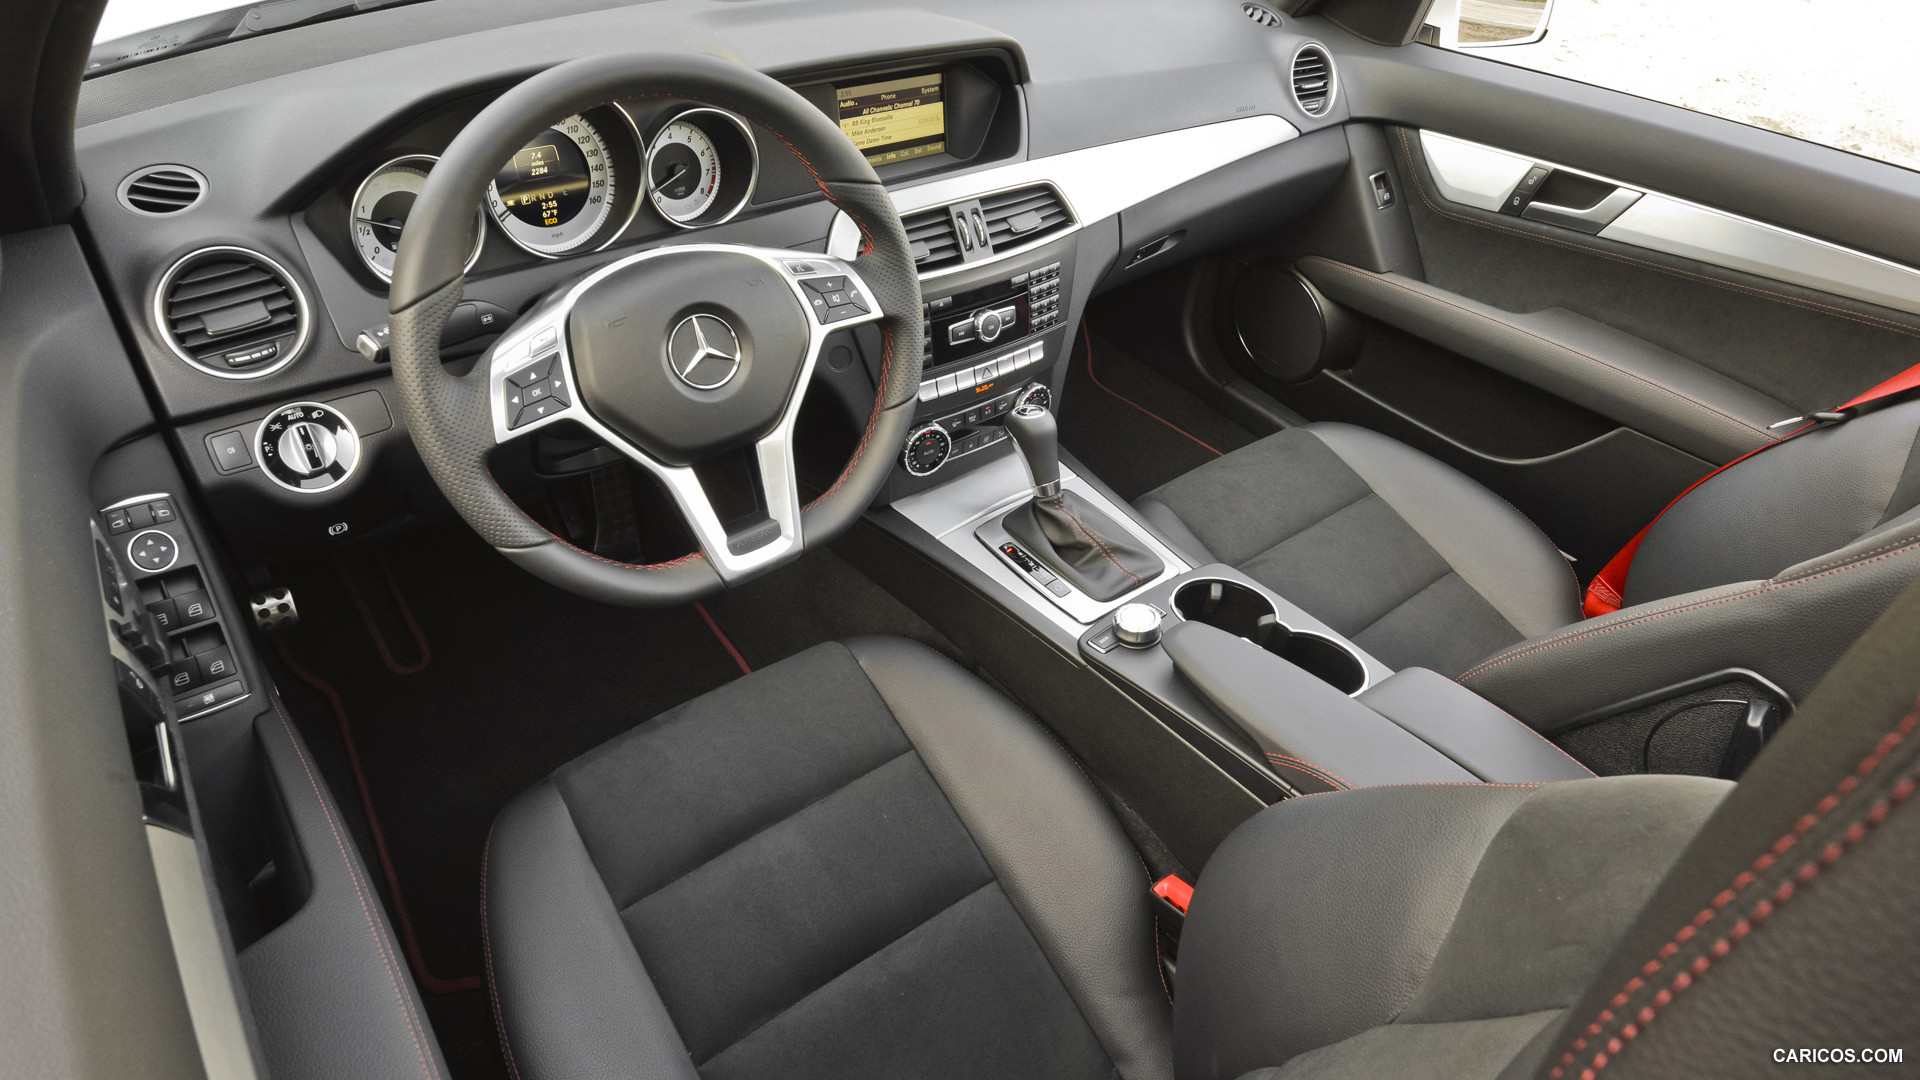 2013 Mercedes-Benz C300 4MATIC Sedan Sport Package Plus  - Interior, #81 of 122